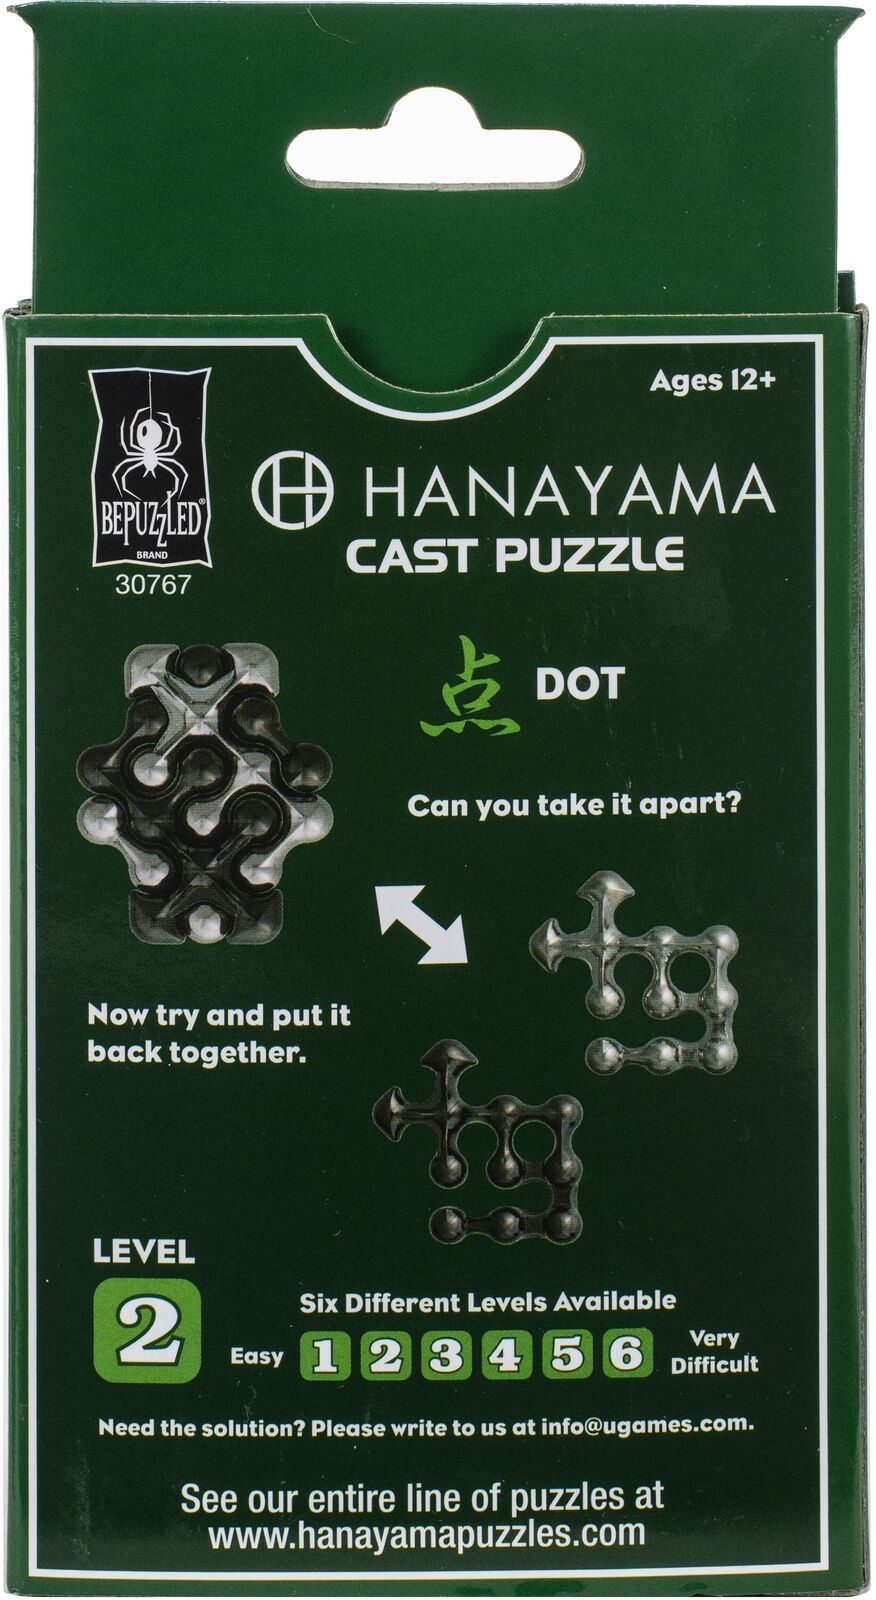 Hanayama Cast Puzzle Series Huzzle CAST DOT Brain Teaser Puzzle Game Level 2 